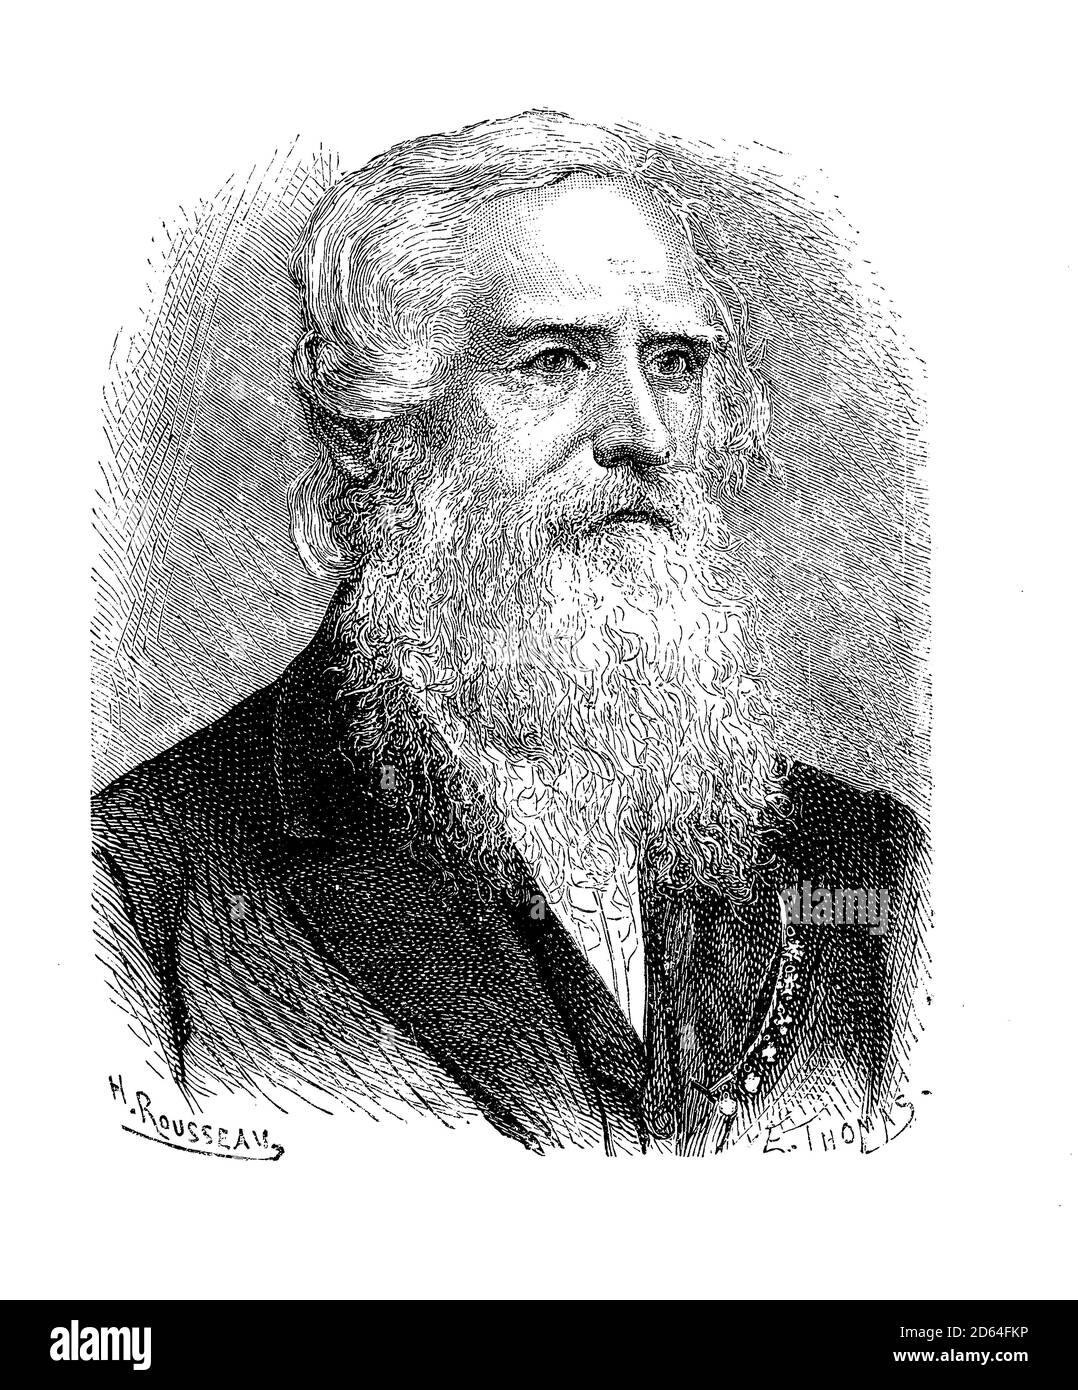 Gravurporträt von Samuel Morse (1791-1872), Erfinder und Maler, Mitentwickler des Morse-Codes für Telegraphie Stockfoto